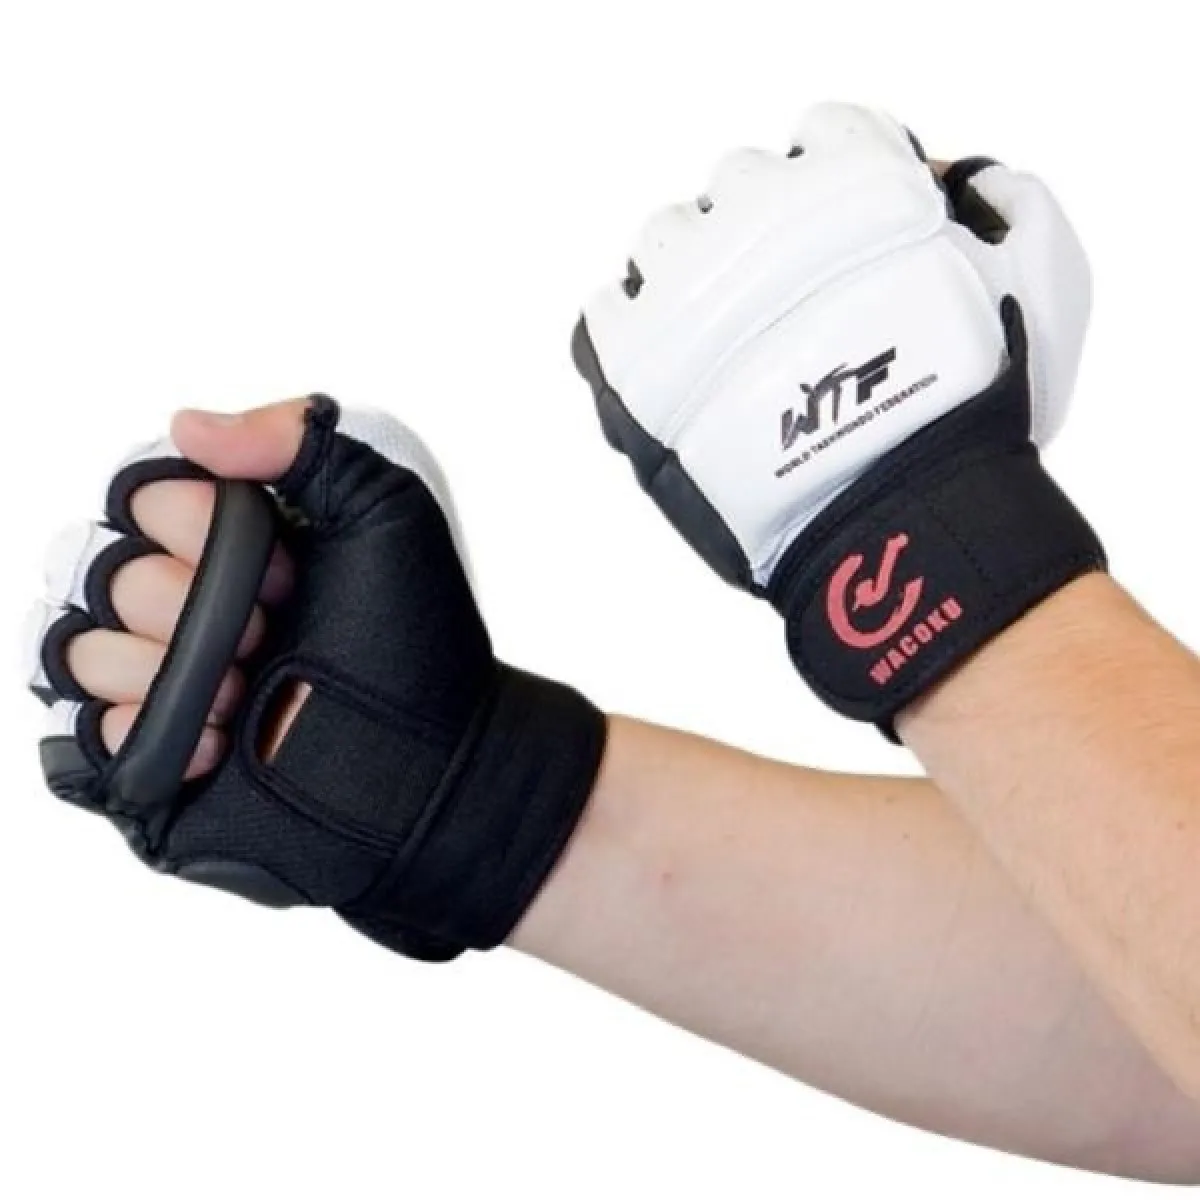 WT Protège-poings, protection des mains pour Taekwondo avec homologation